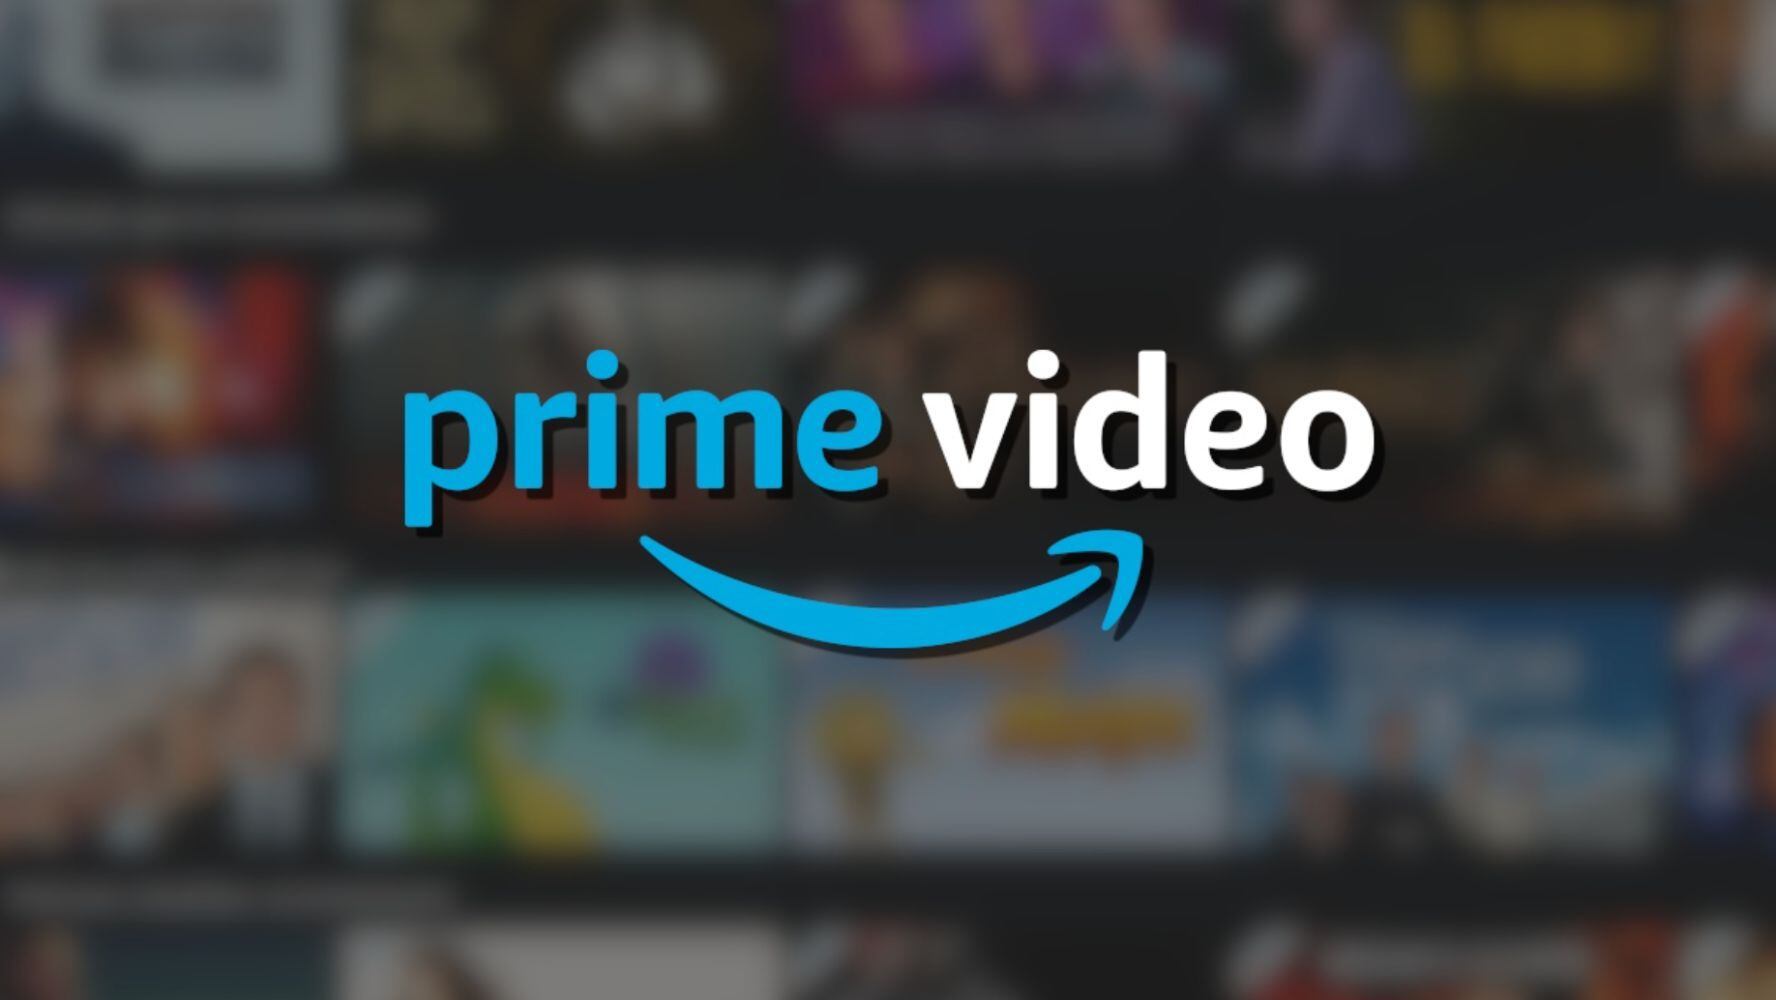 Prime Video ofrece no solo su catálogo de series y películas, también servicios de compras con envío gratis y música. (Foto: captura de pantalla de Prime Video).